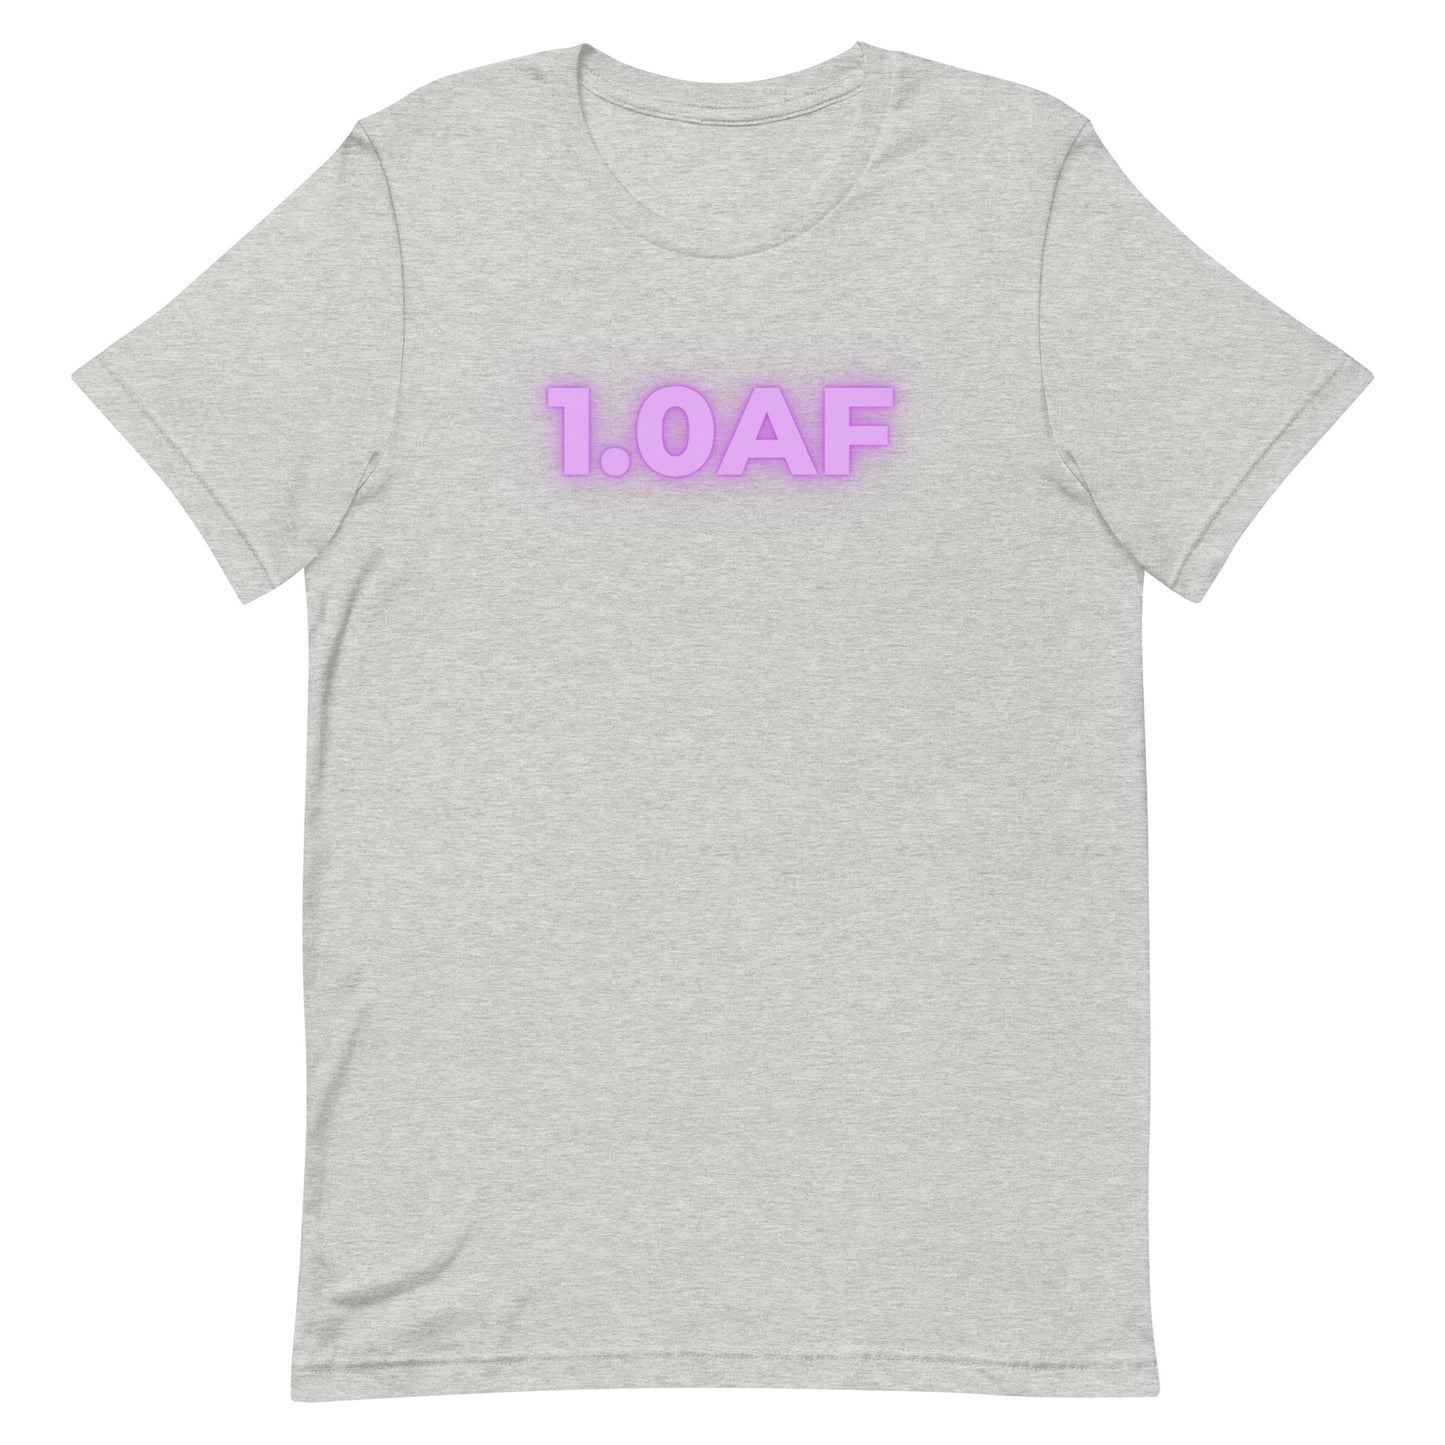 1.0 AF 2.0 T Shirt